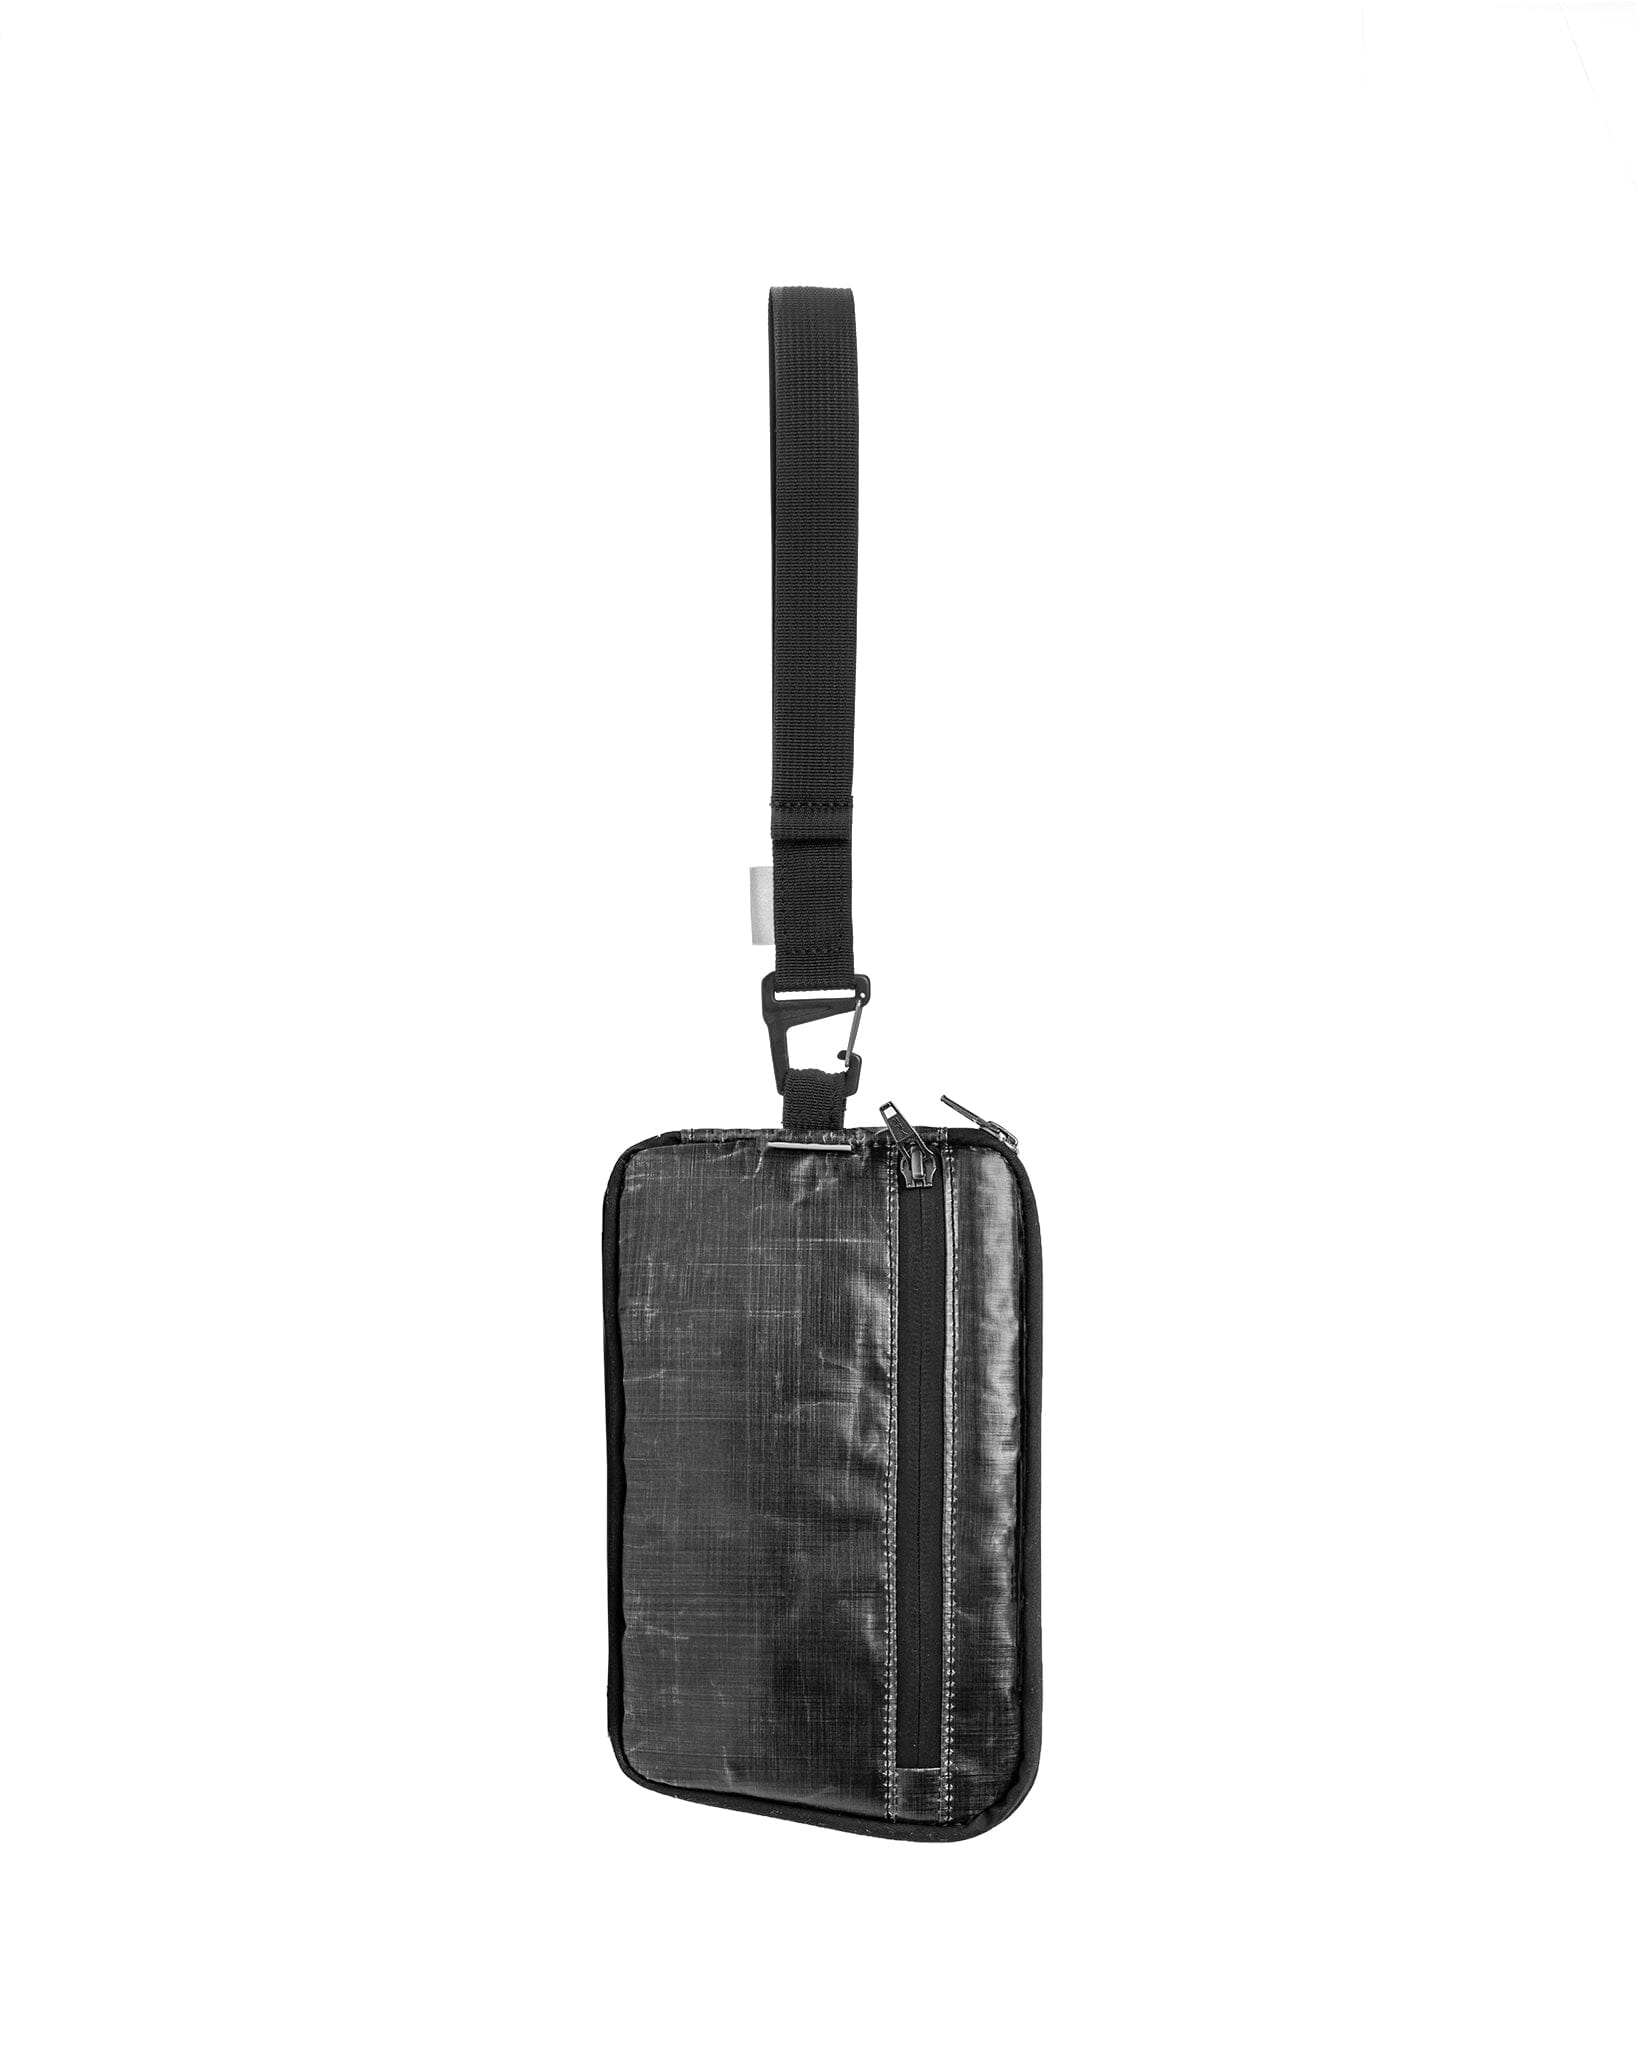 AUX™ Pocket - Black Dyneema Bag bolstr Black Clutch 